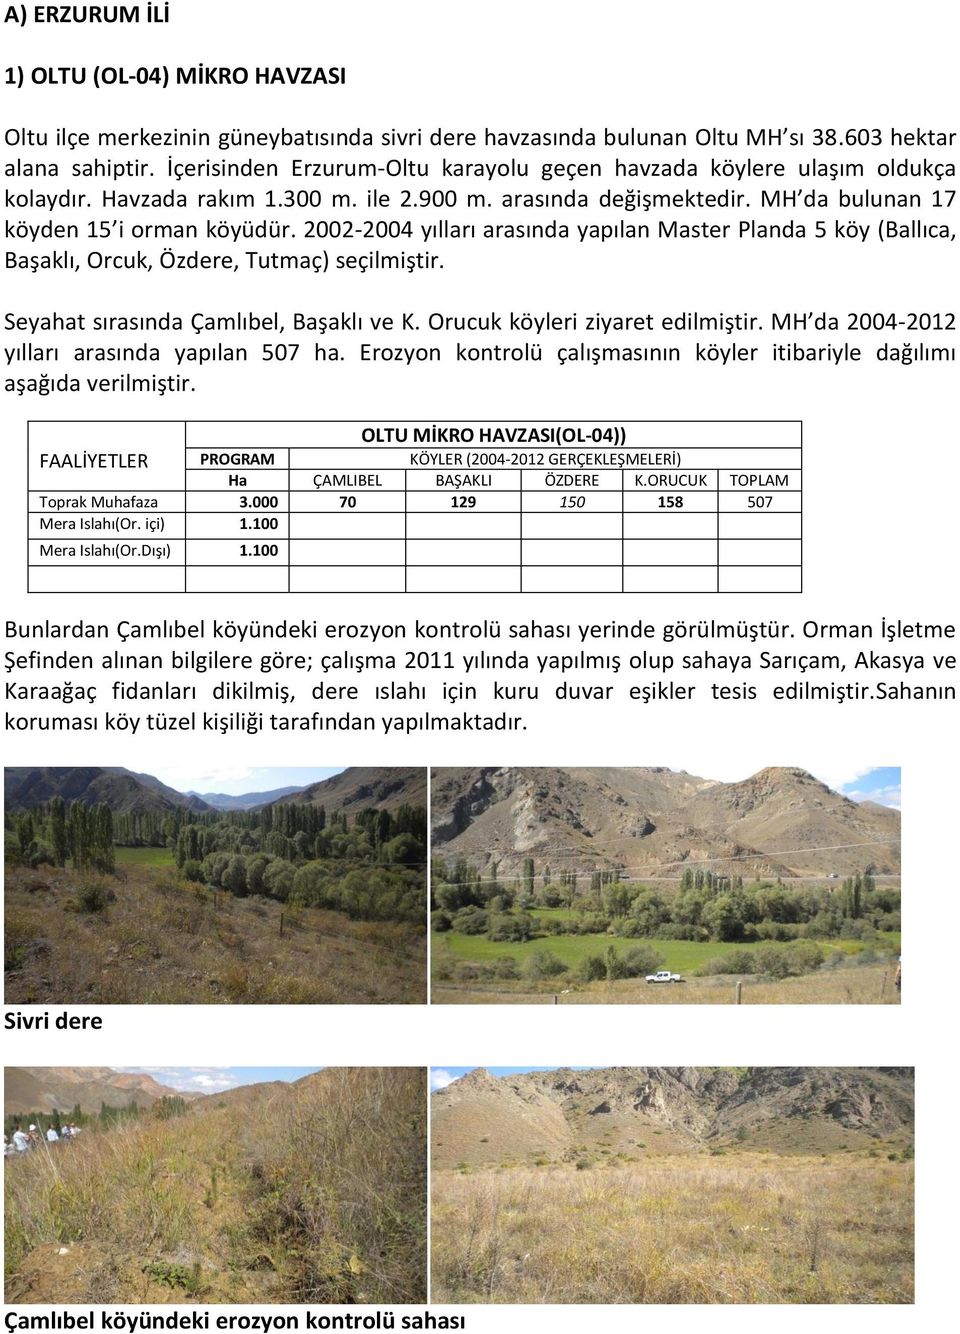 2002-2004 yılları arasında yapılan Master Planda 5 köy (Ballıca, Başaklı, Orcuk, Özdere, Tutmaç) seçilmiştir. Seyahat sırasında Çamlıbel, Başaklı ve K. Orucuk köyleri ziyaret edilmiştir.